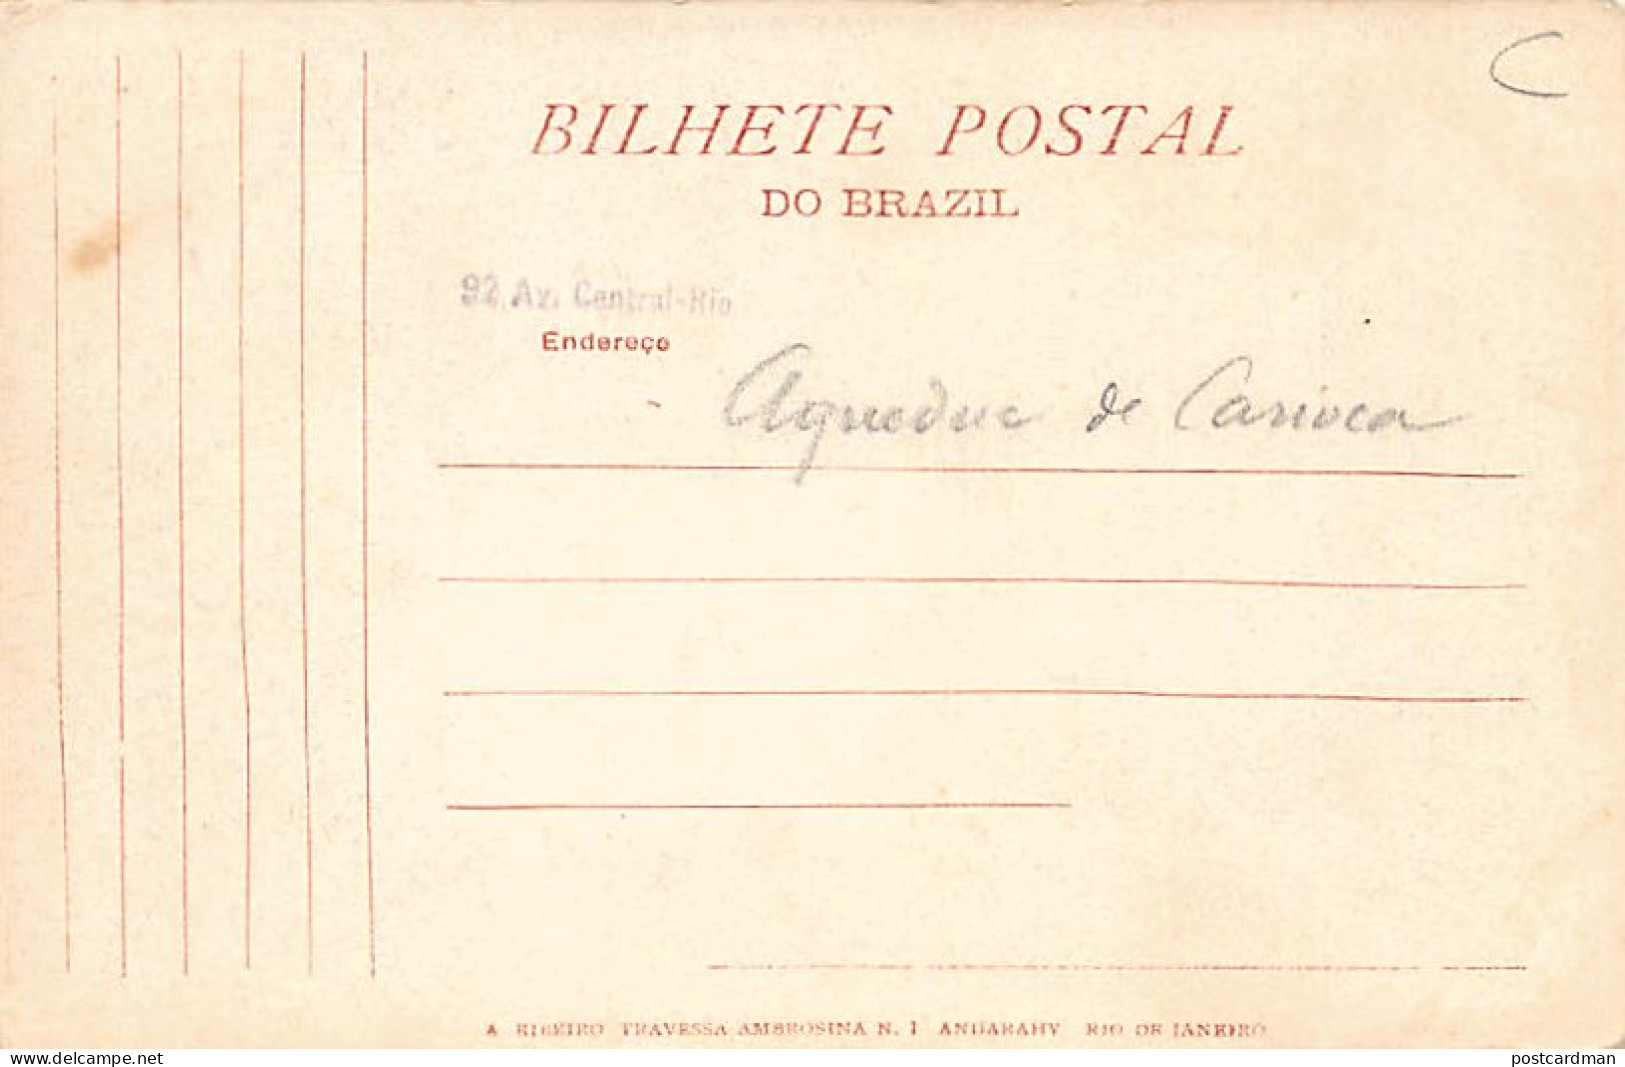 Brasil - RIO - Aqueducto Da Carioca - Ed. A. Ribeiro 85 - Other & Unclassified